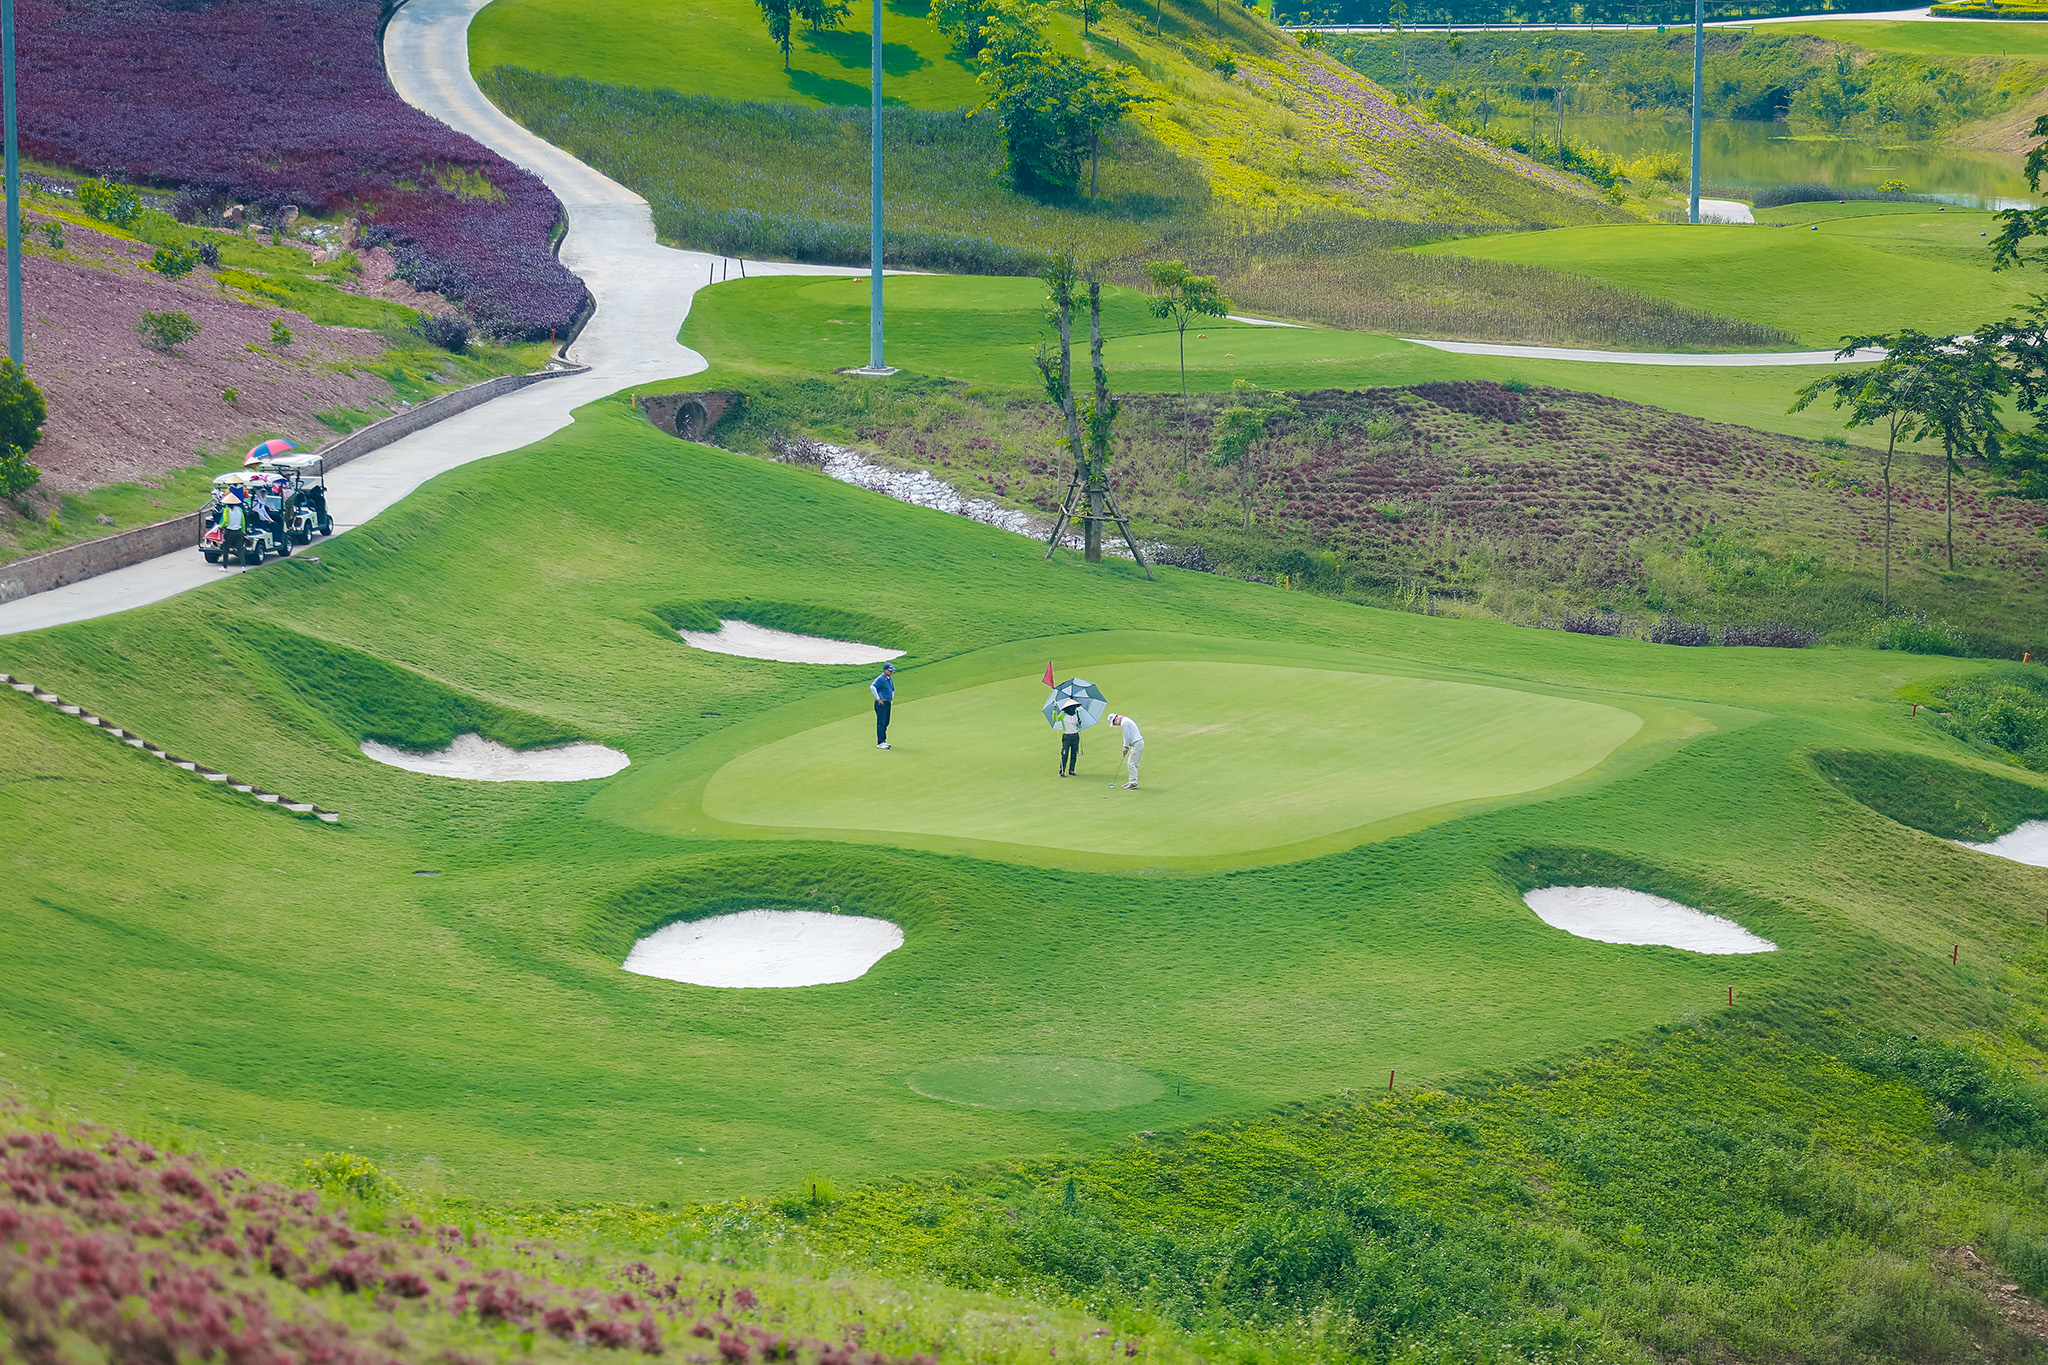 Sân golf Yên Dũng sẵn sàng chào đón các golfer tham gia tranh tài tại Giải Vô địch Đối kháng Quốc gia 2019